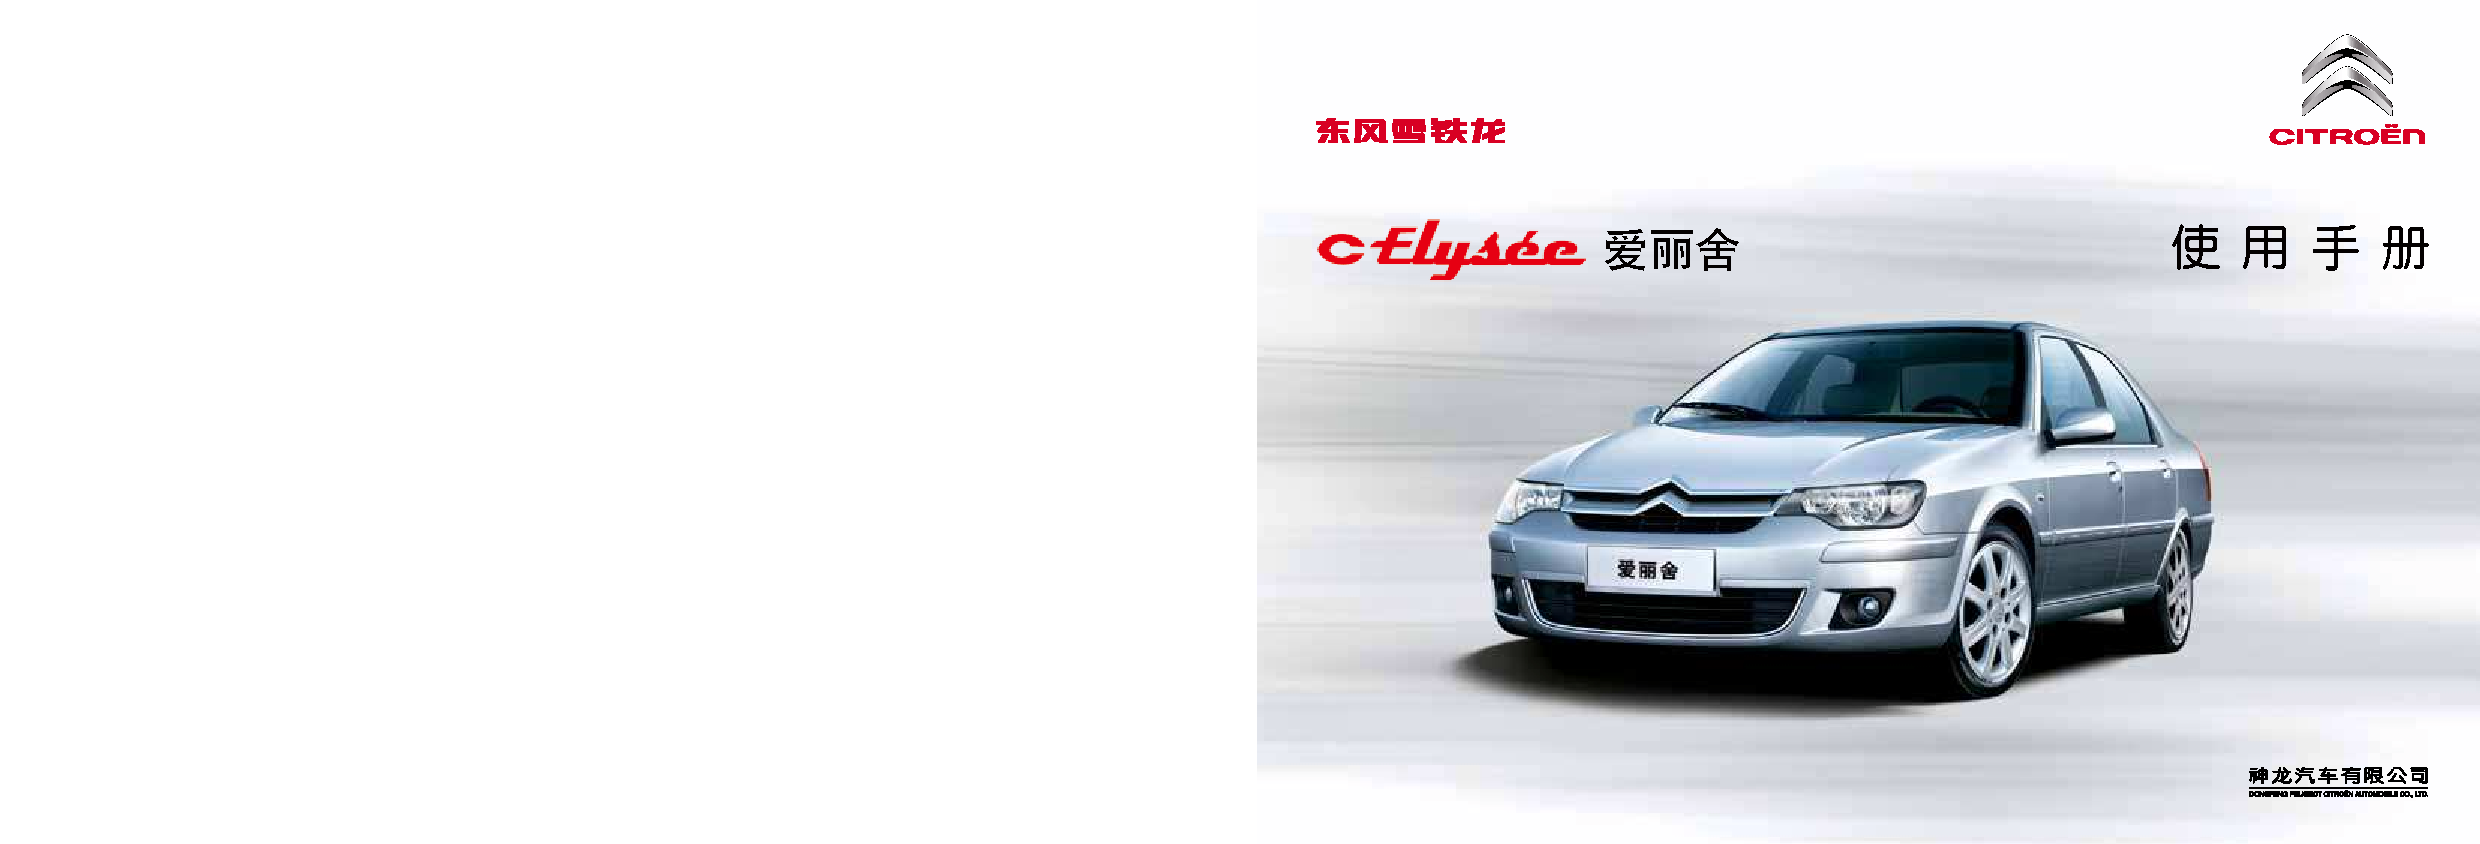 雪铁龙 Citroen C-ELYSEE 爱丽舍经典版 2014 用户手册 封面